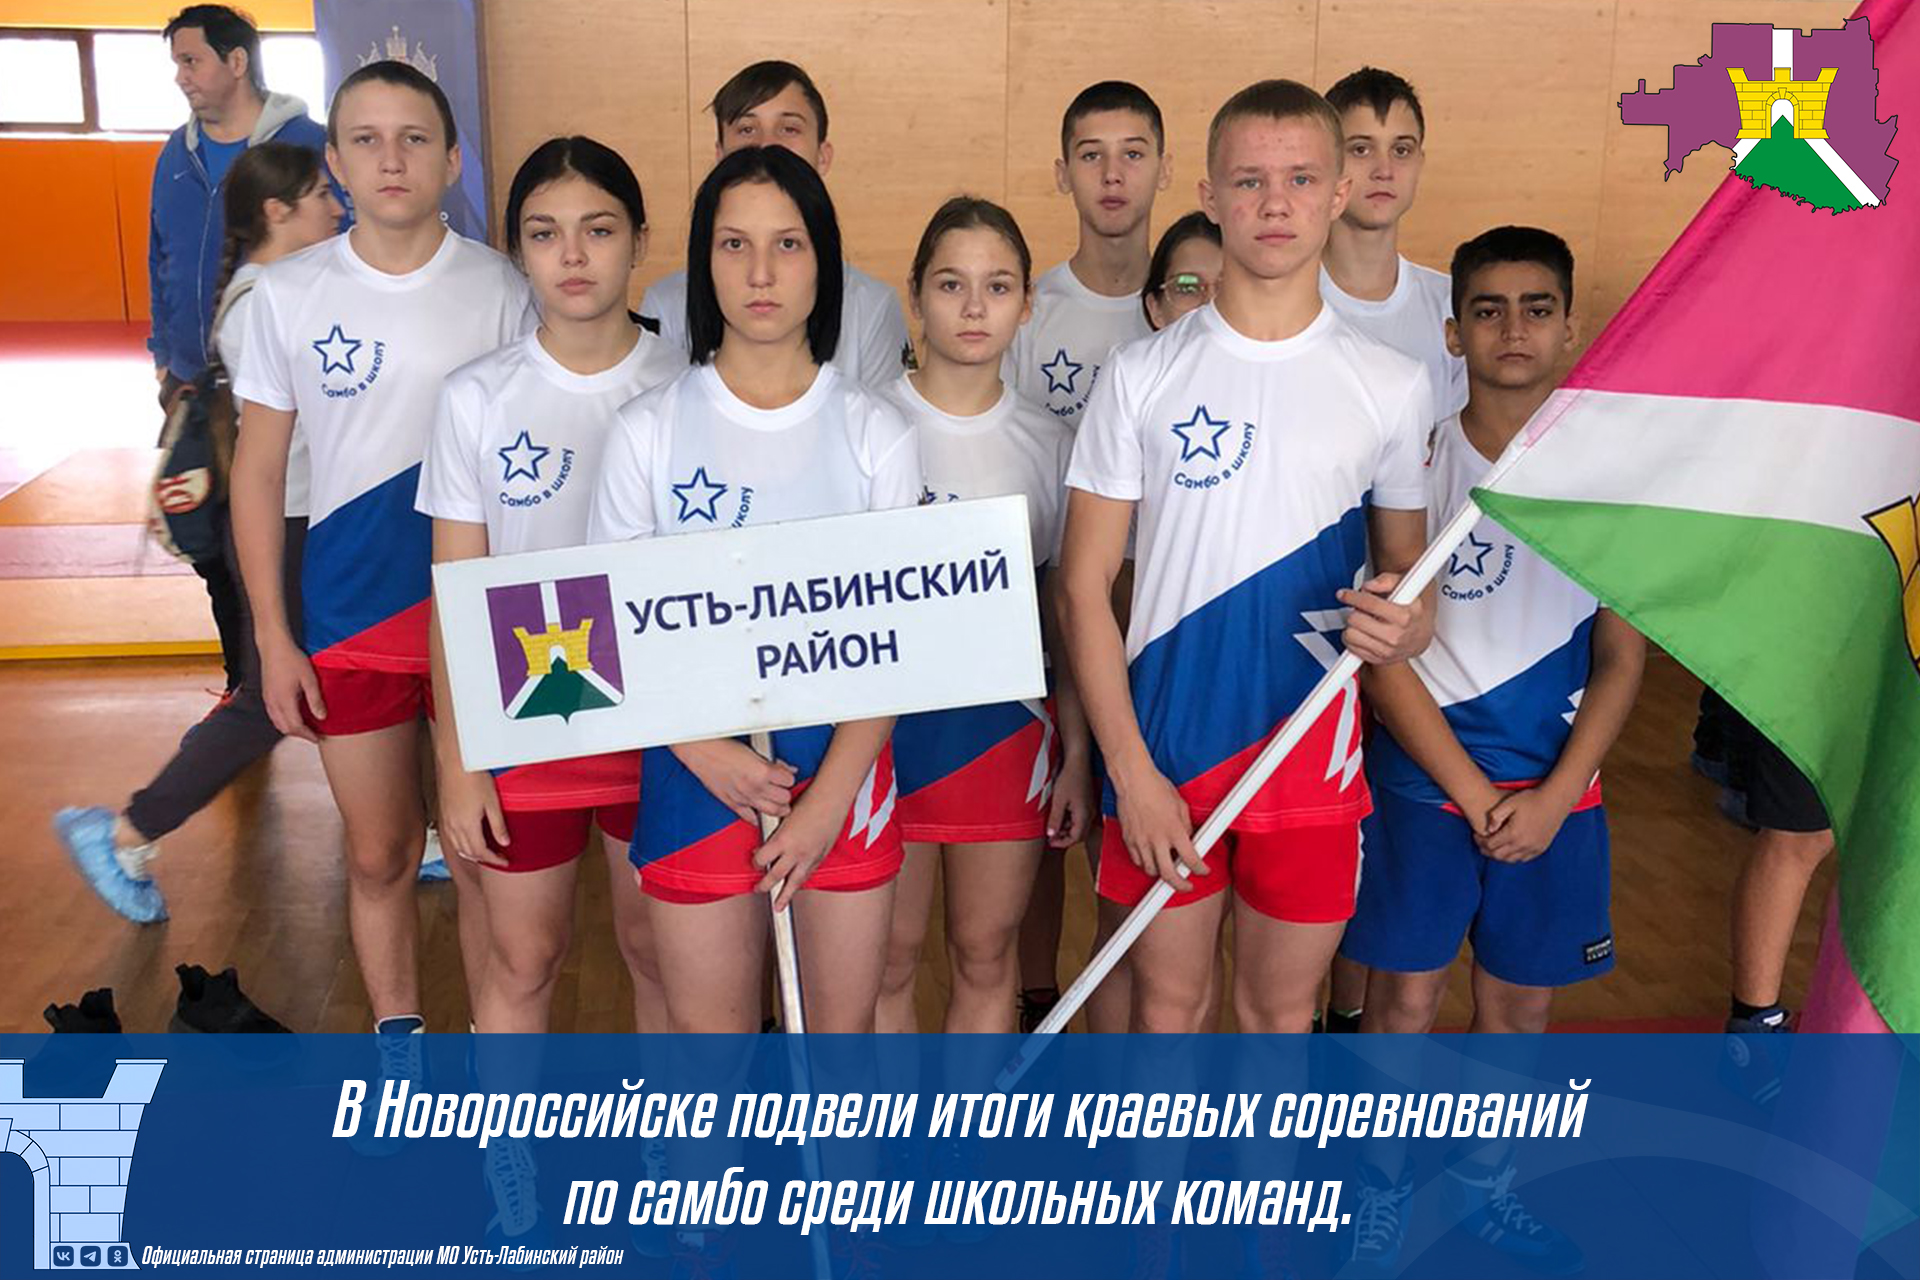 В Новороссийске подвели итоги краевых соревнований по самбо среди школьных команд